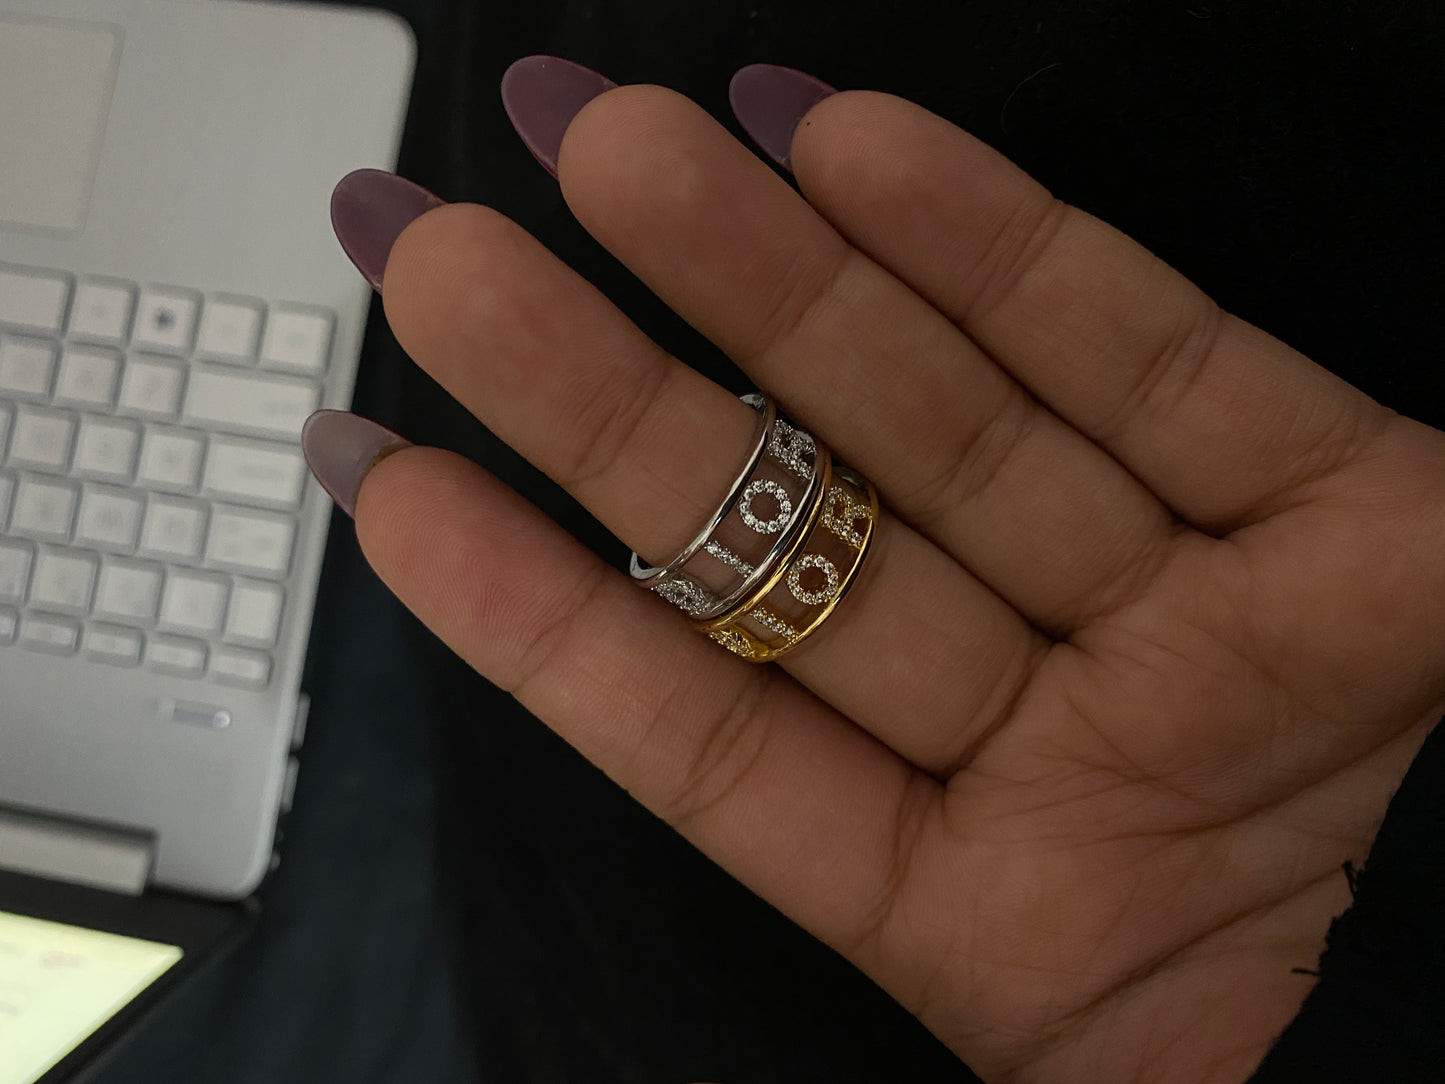 Diorn ring